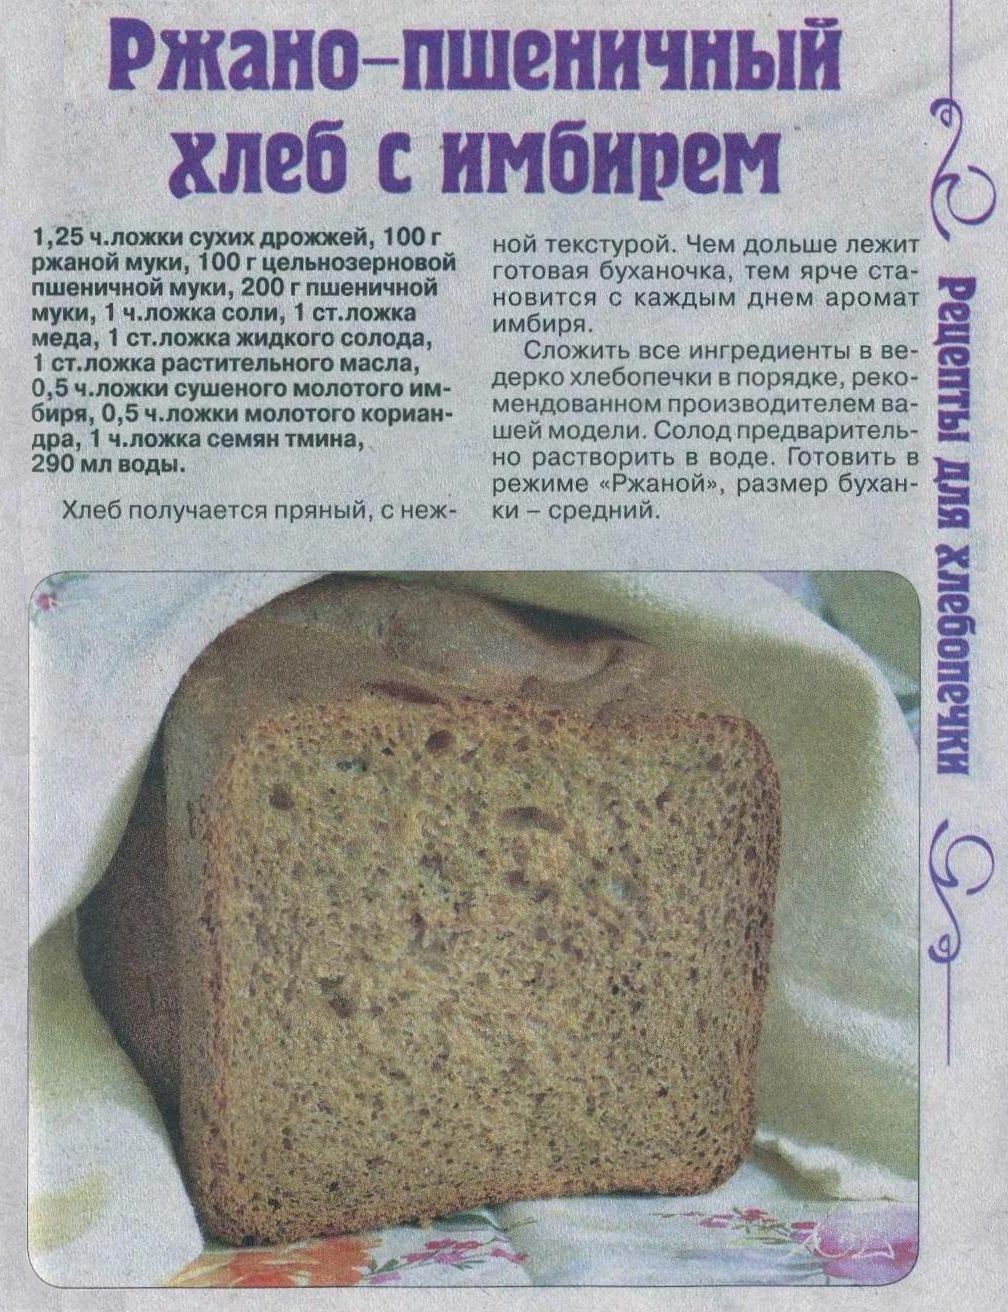 Пошаговый рецепт хлеба в хлебопечке. Рецепт хлеба в хлебопечке. Тесто на хлеб в хлебопечке. Домашний хлеб в хлебопечке. Рецептура ржаного хлеба.